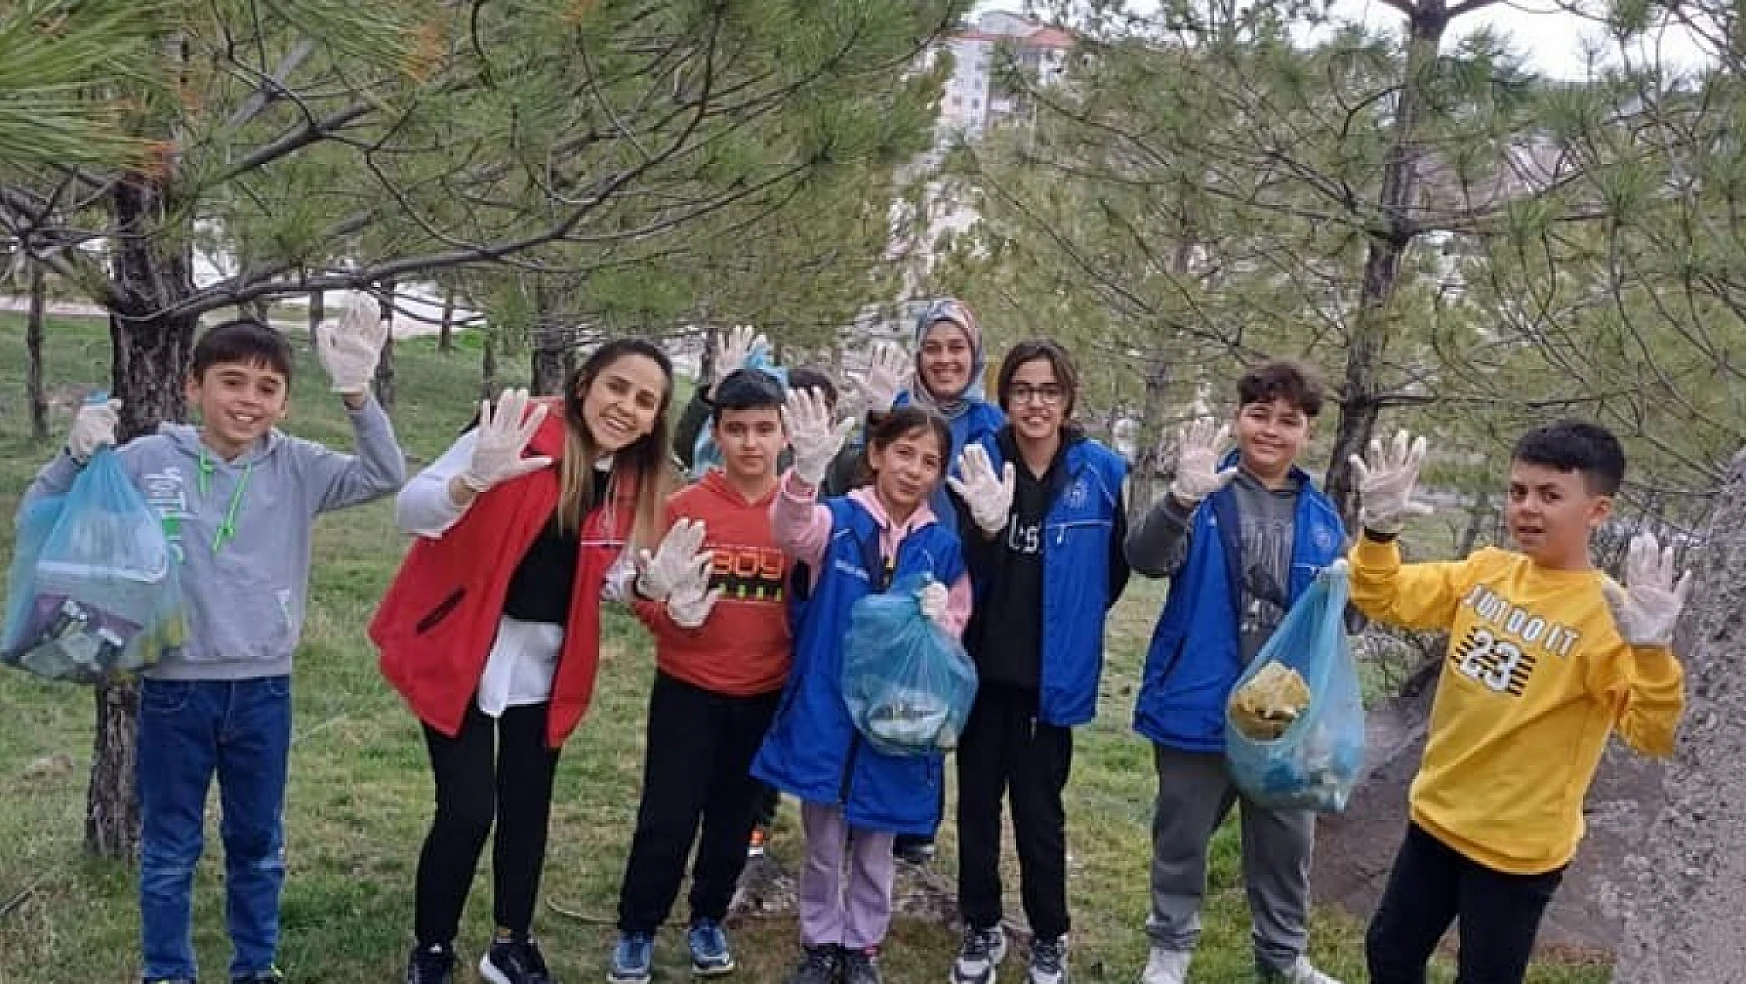 Konya'da 'Sosyal Medyadan Sosyal Meydana' projesi gerçekleşti